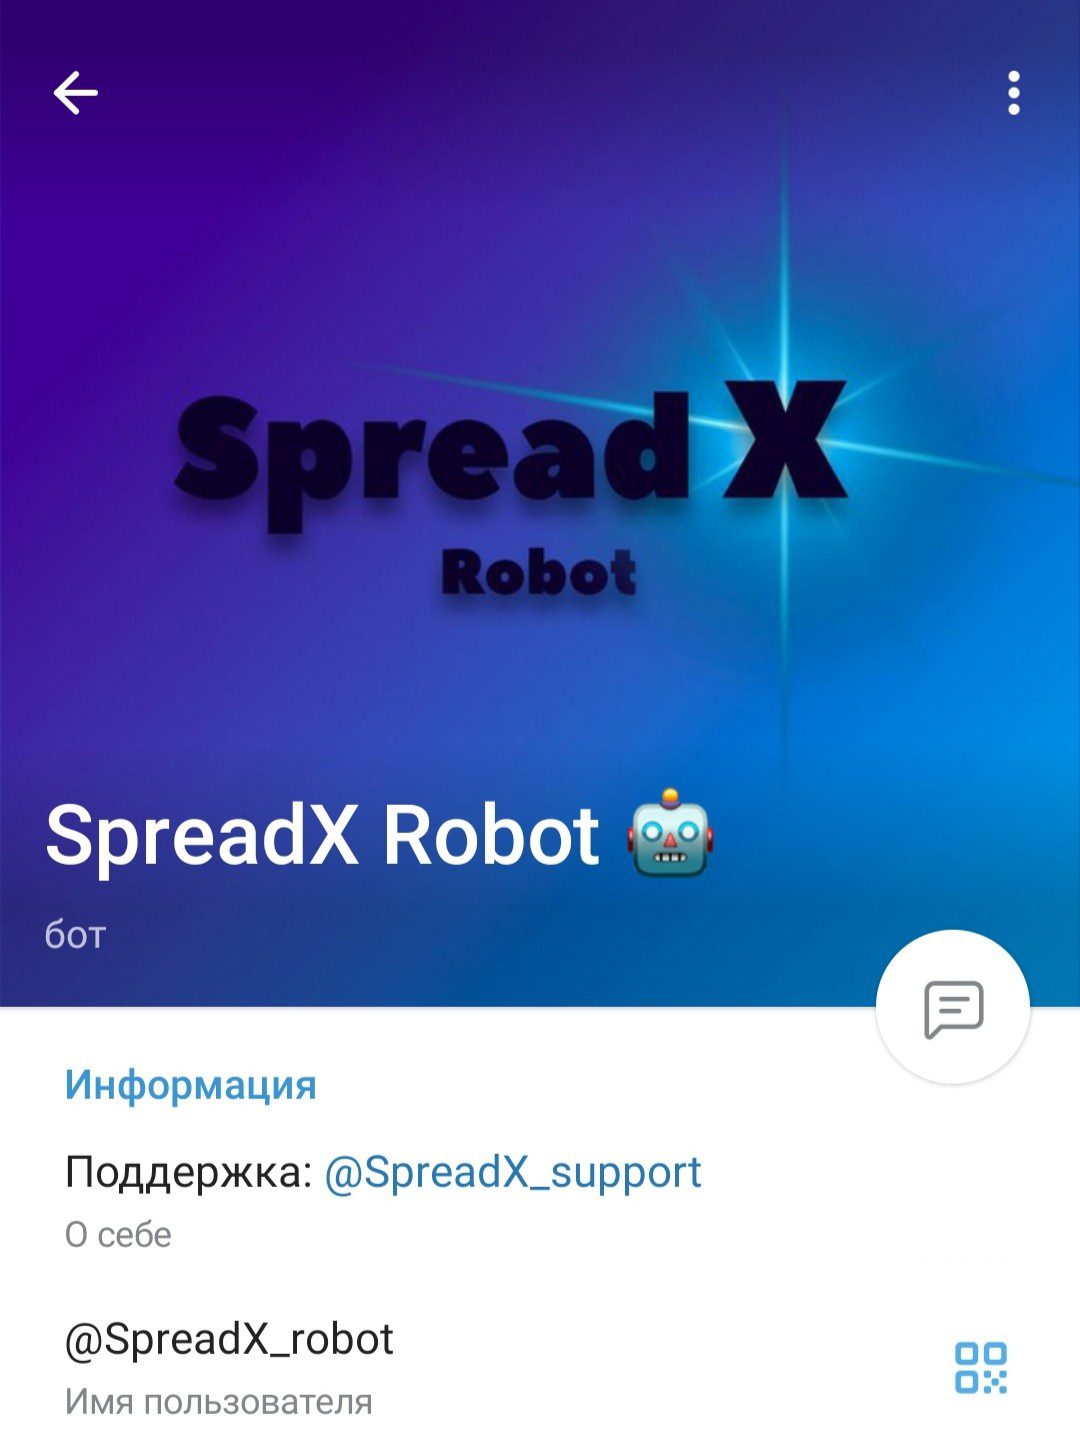 Проект SpreadX Robot телеграм бот